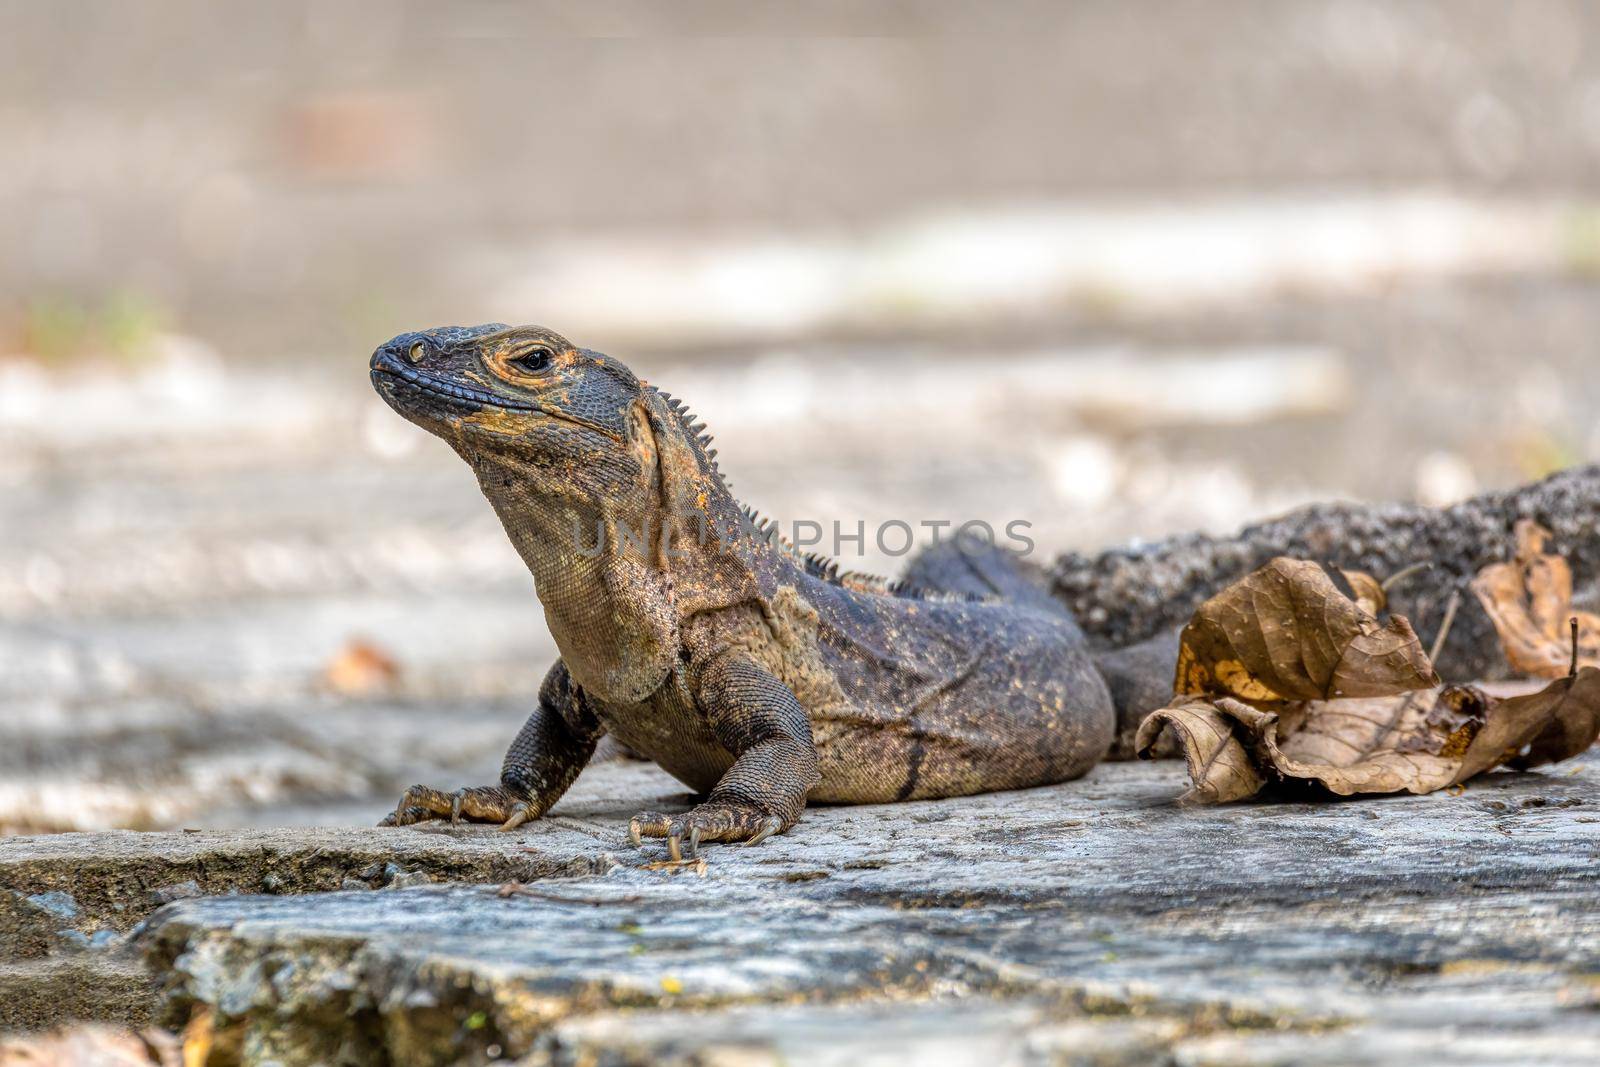 Black spiny-tailed iguana (Ctenosaura similis), National Park Carara, Costa Rica wildlife by artush